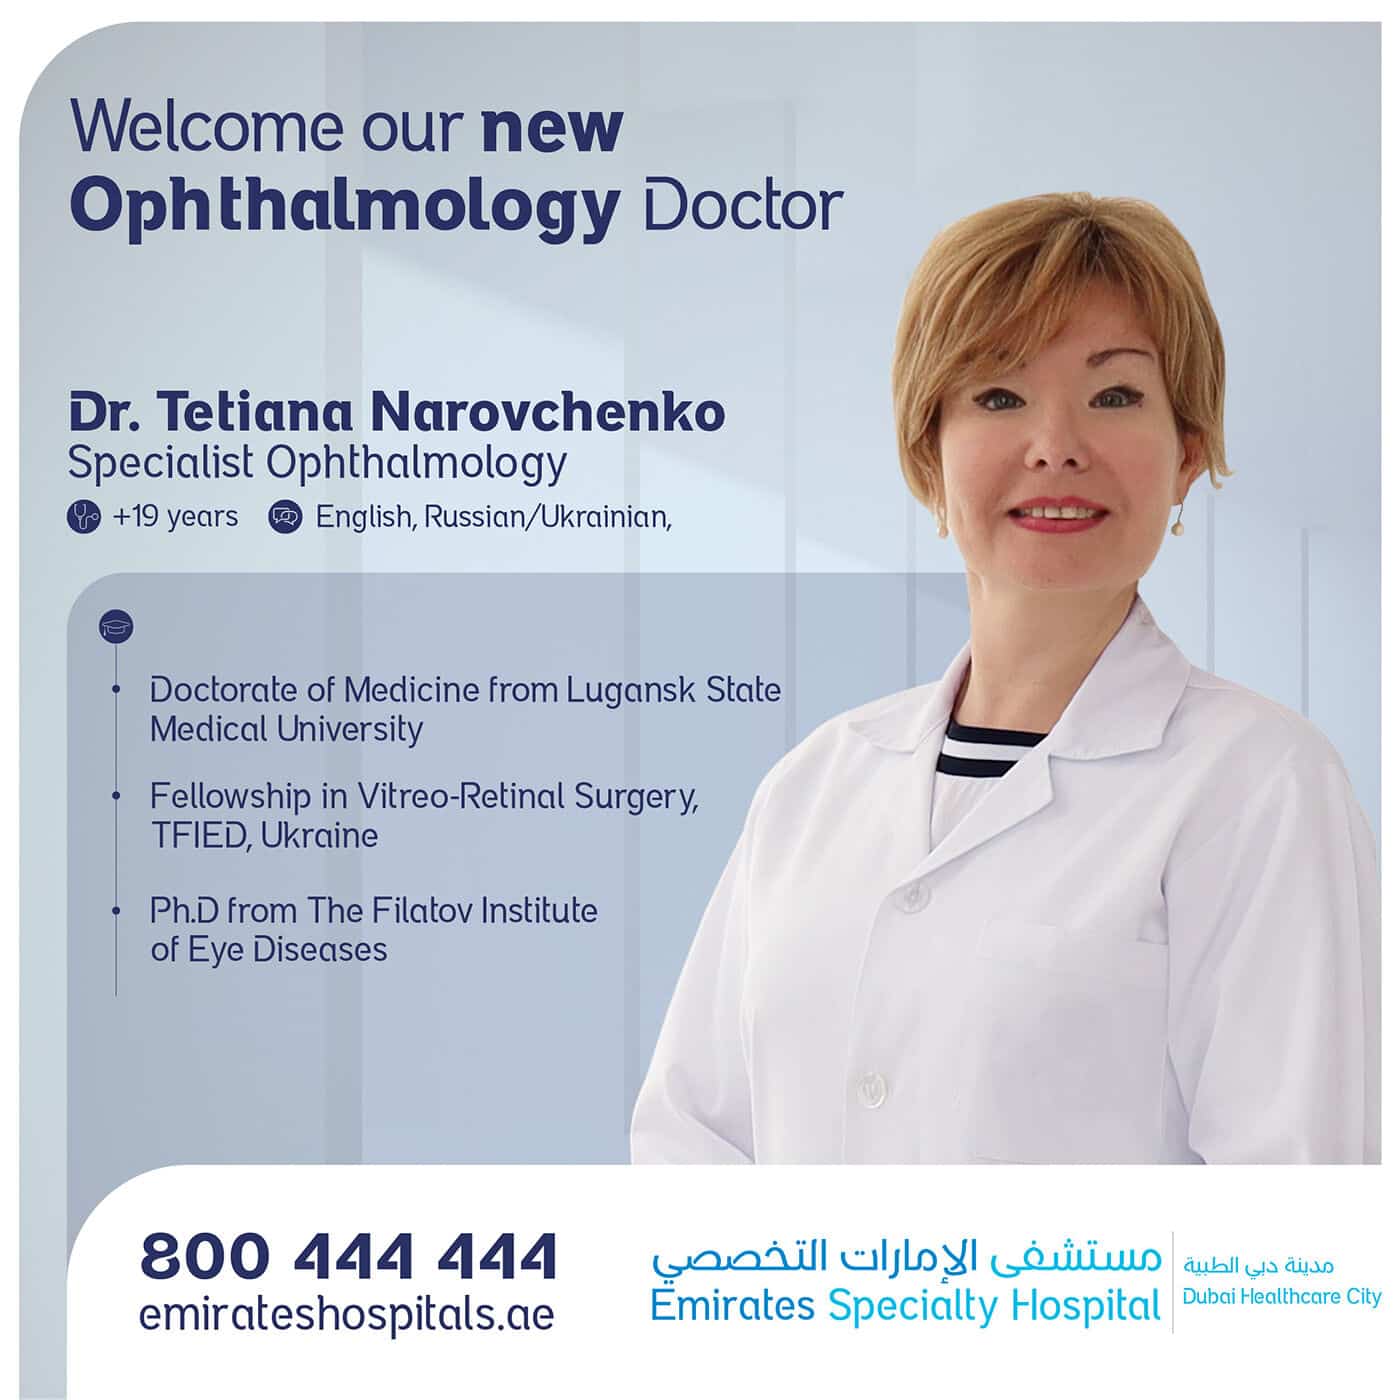 Dr. Tetiana Narovchenko, joining Emirates Specialty Hospital